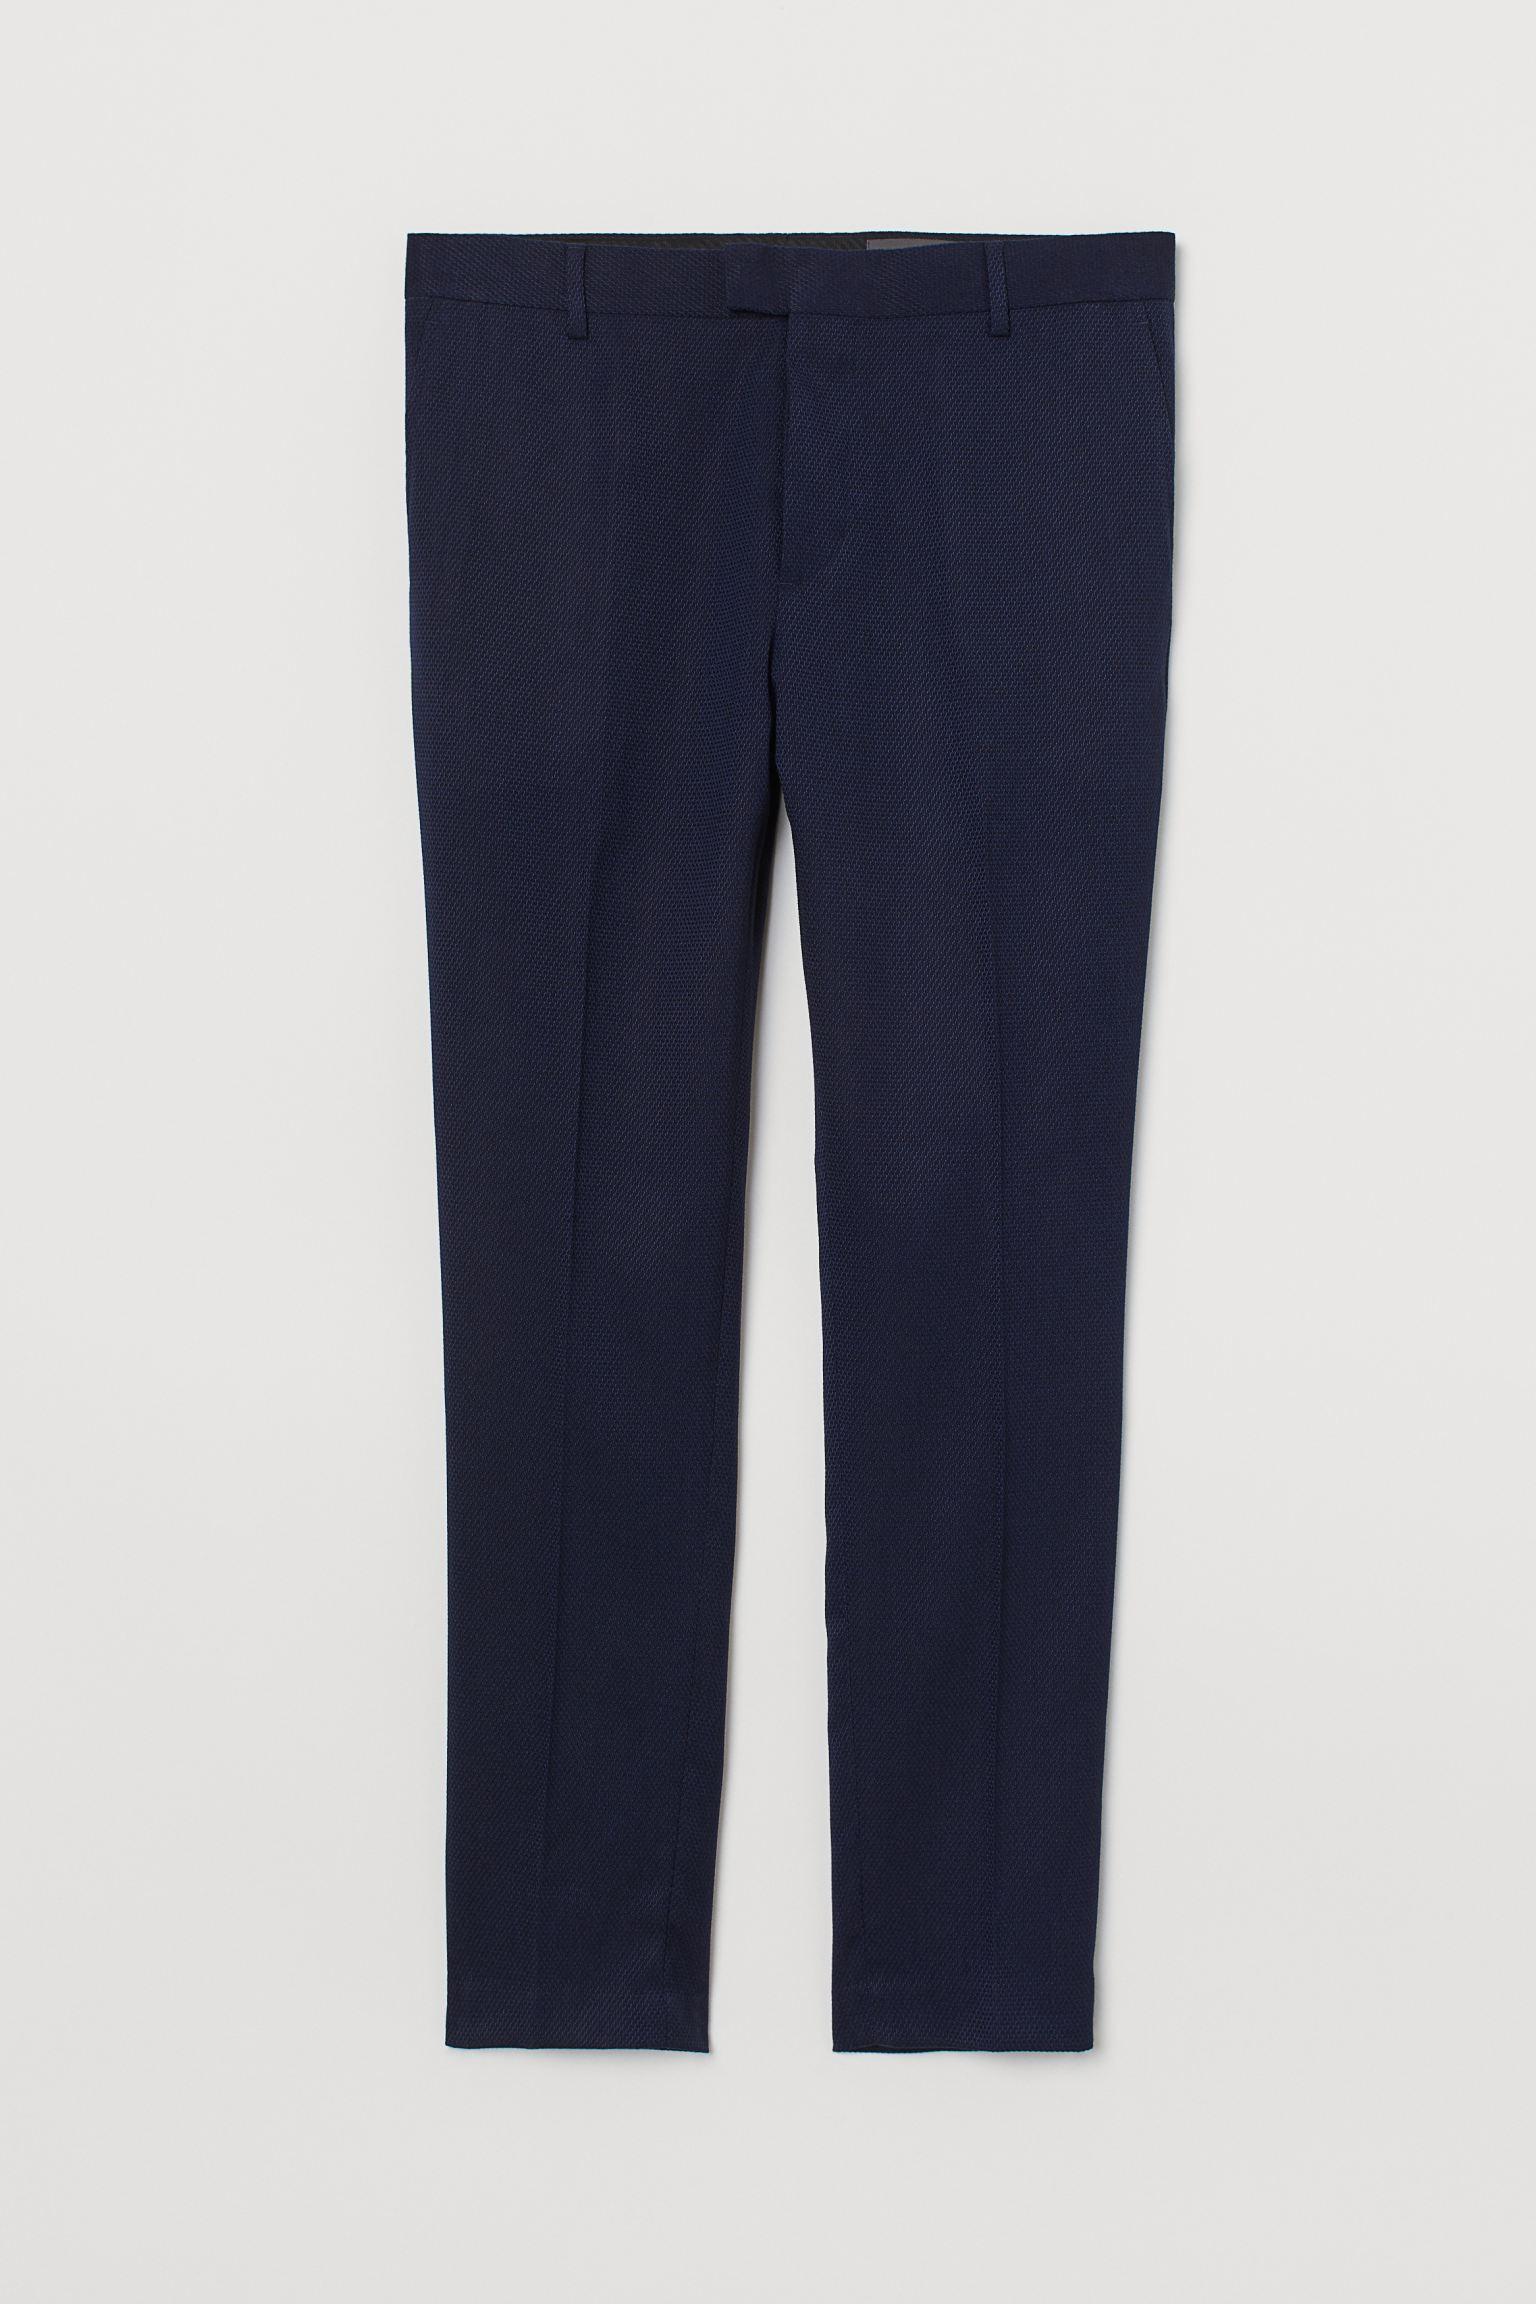 Отзыв на Брюки классические узкие джинсы Fit из Интернет-Магазина H&M